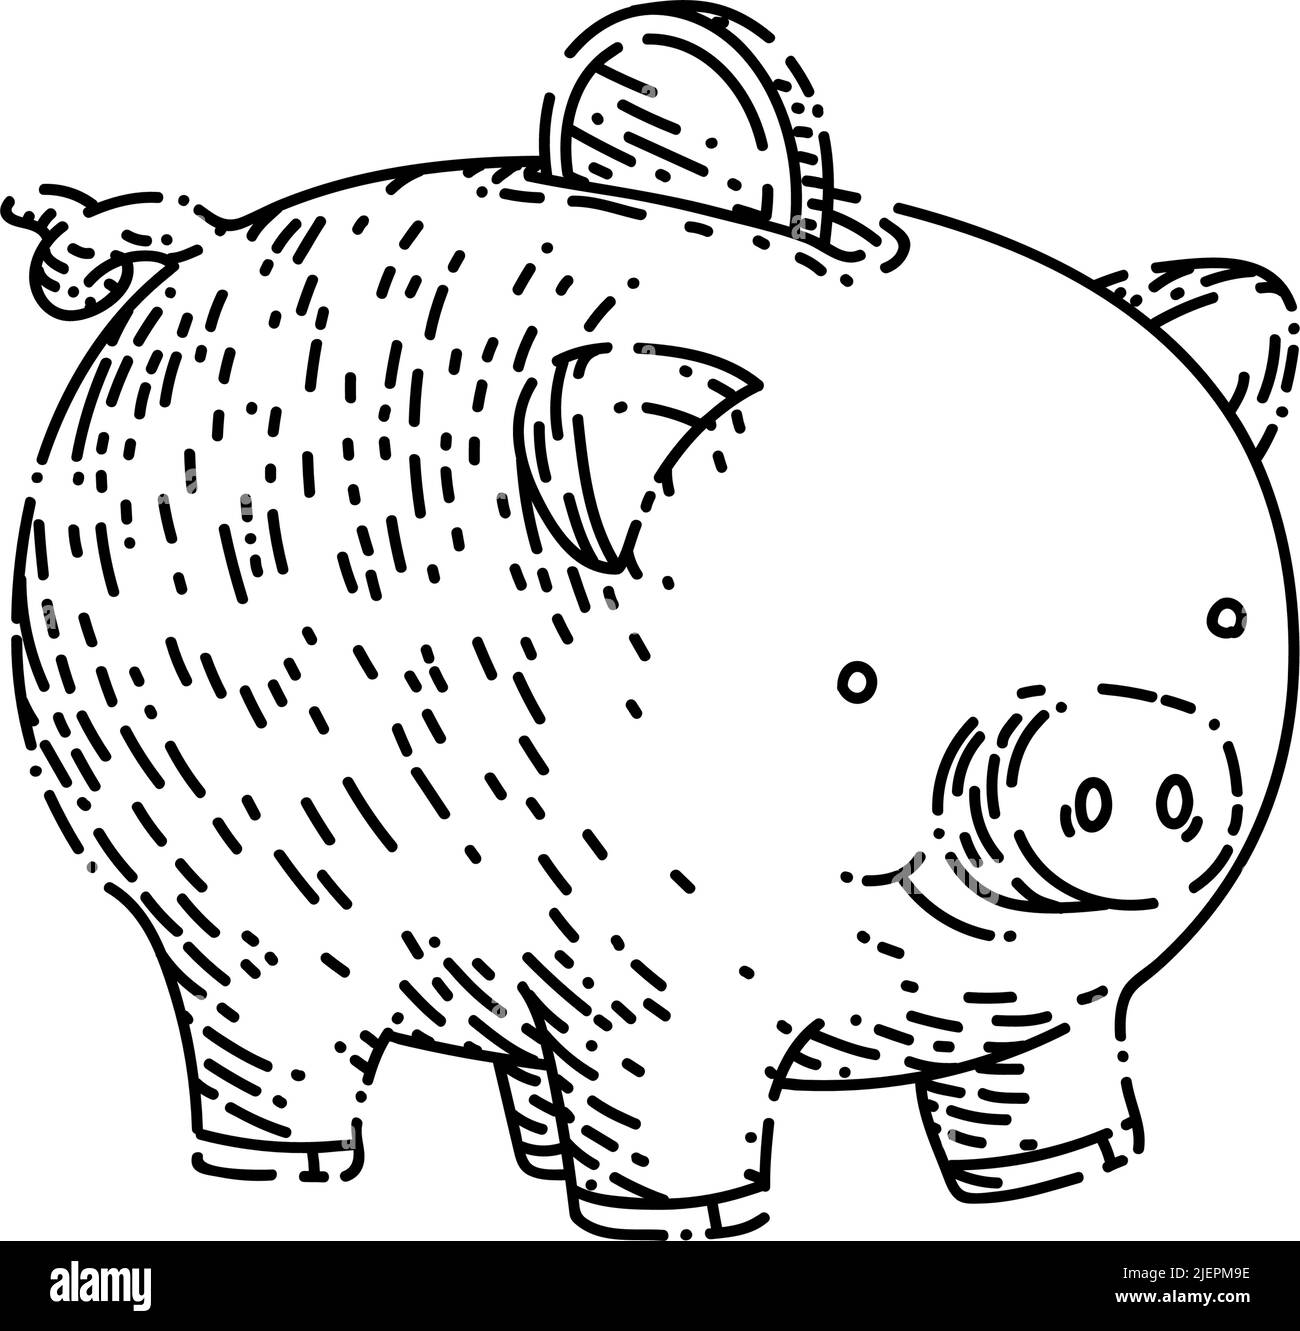 Von Hand gezeichneter Vektor mit Sparschwein-Skizze Stock Vektor